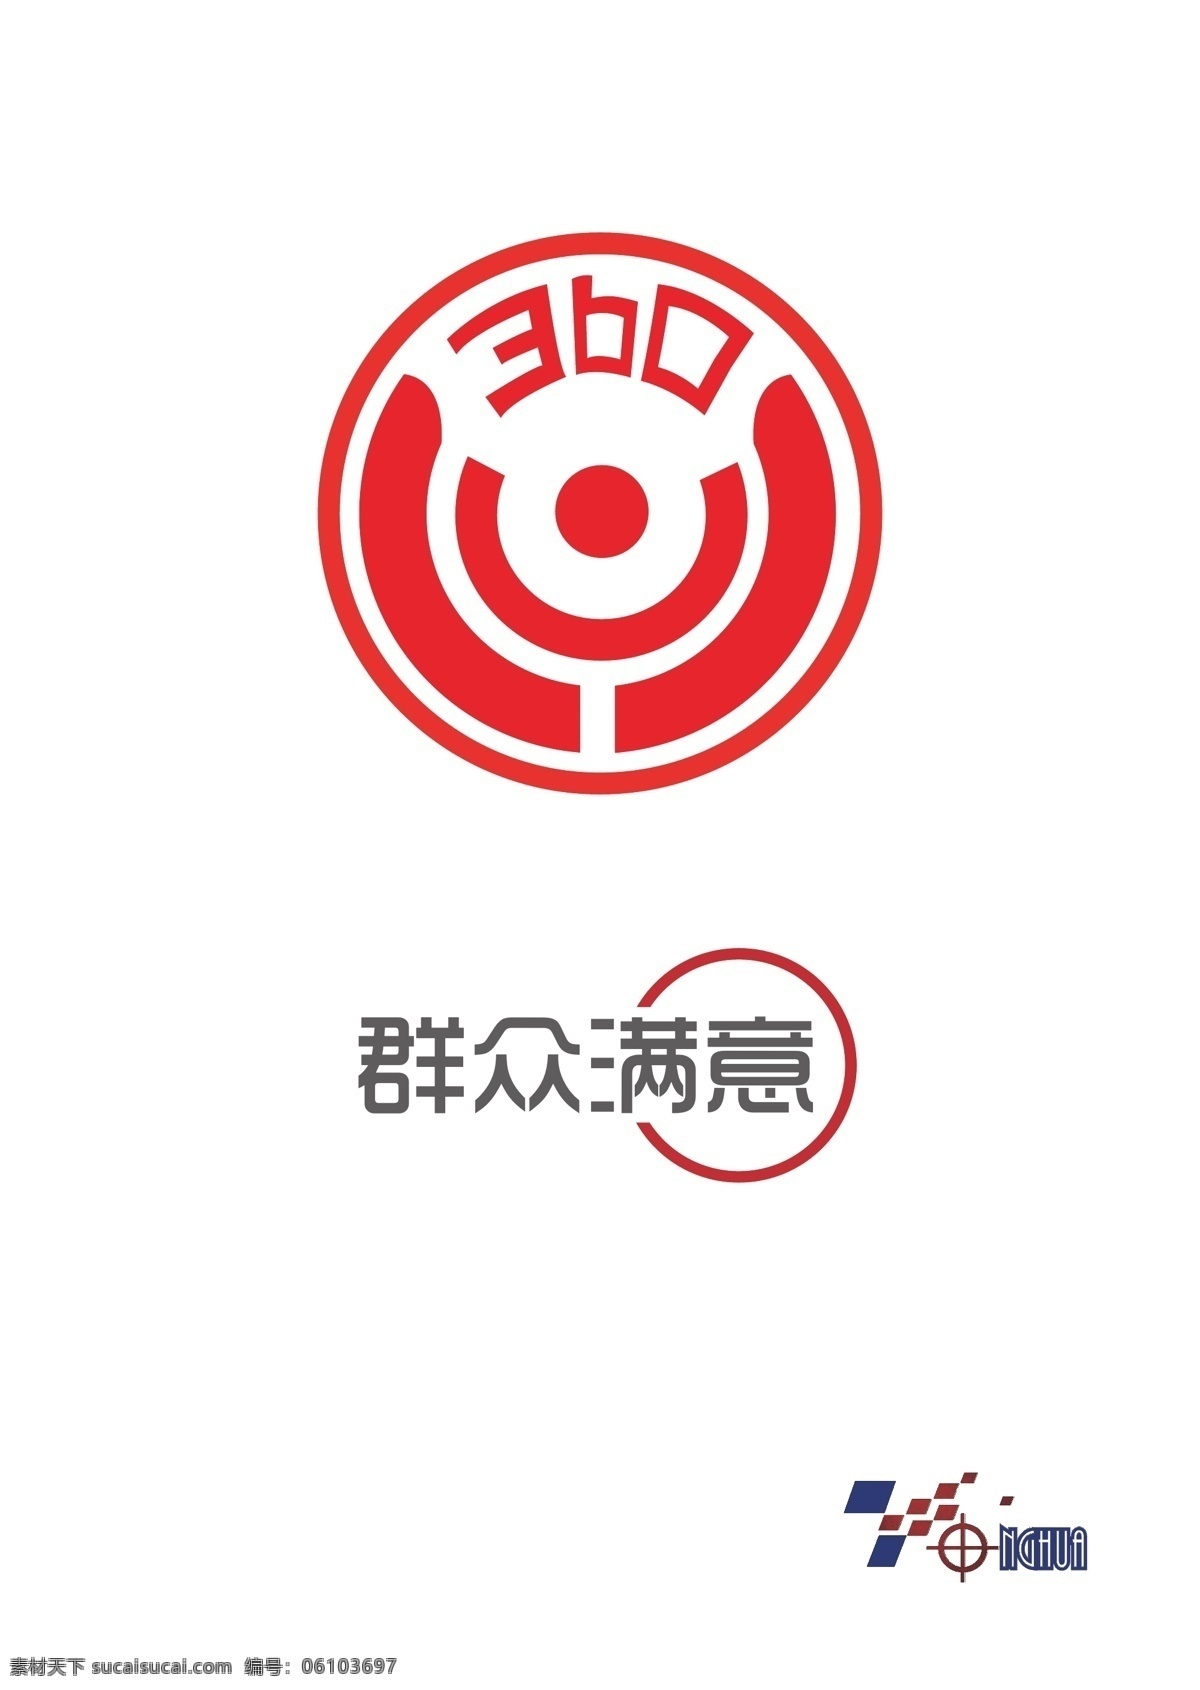 政府 logo 群众满意 市政 标志图标 企业 标志